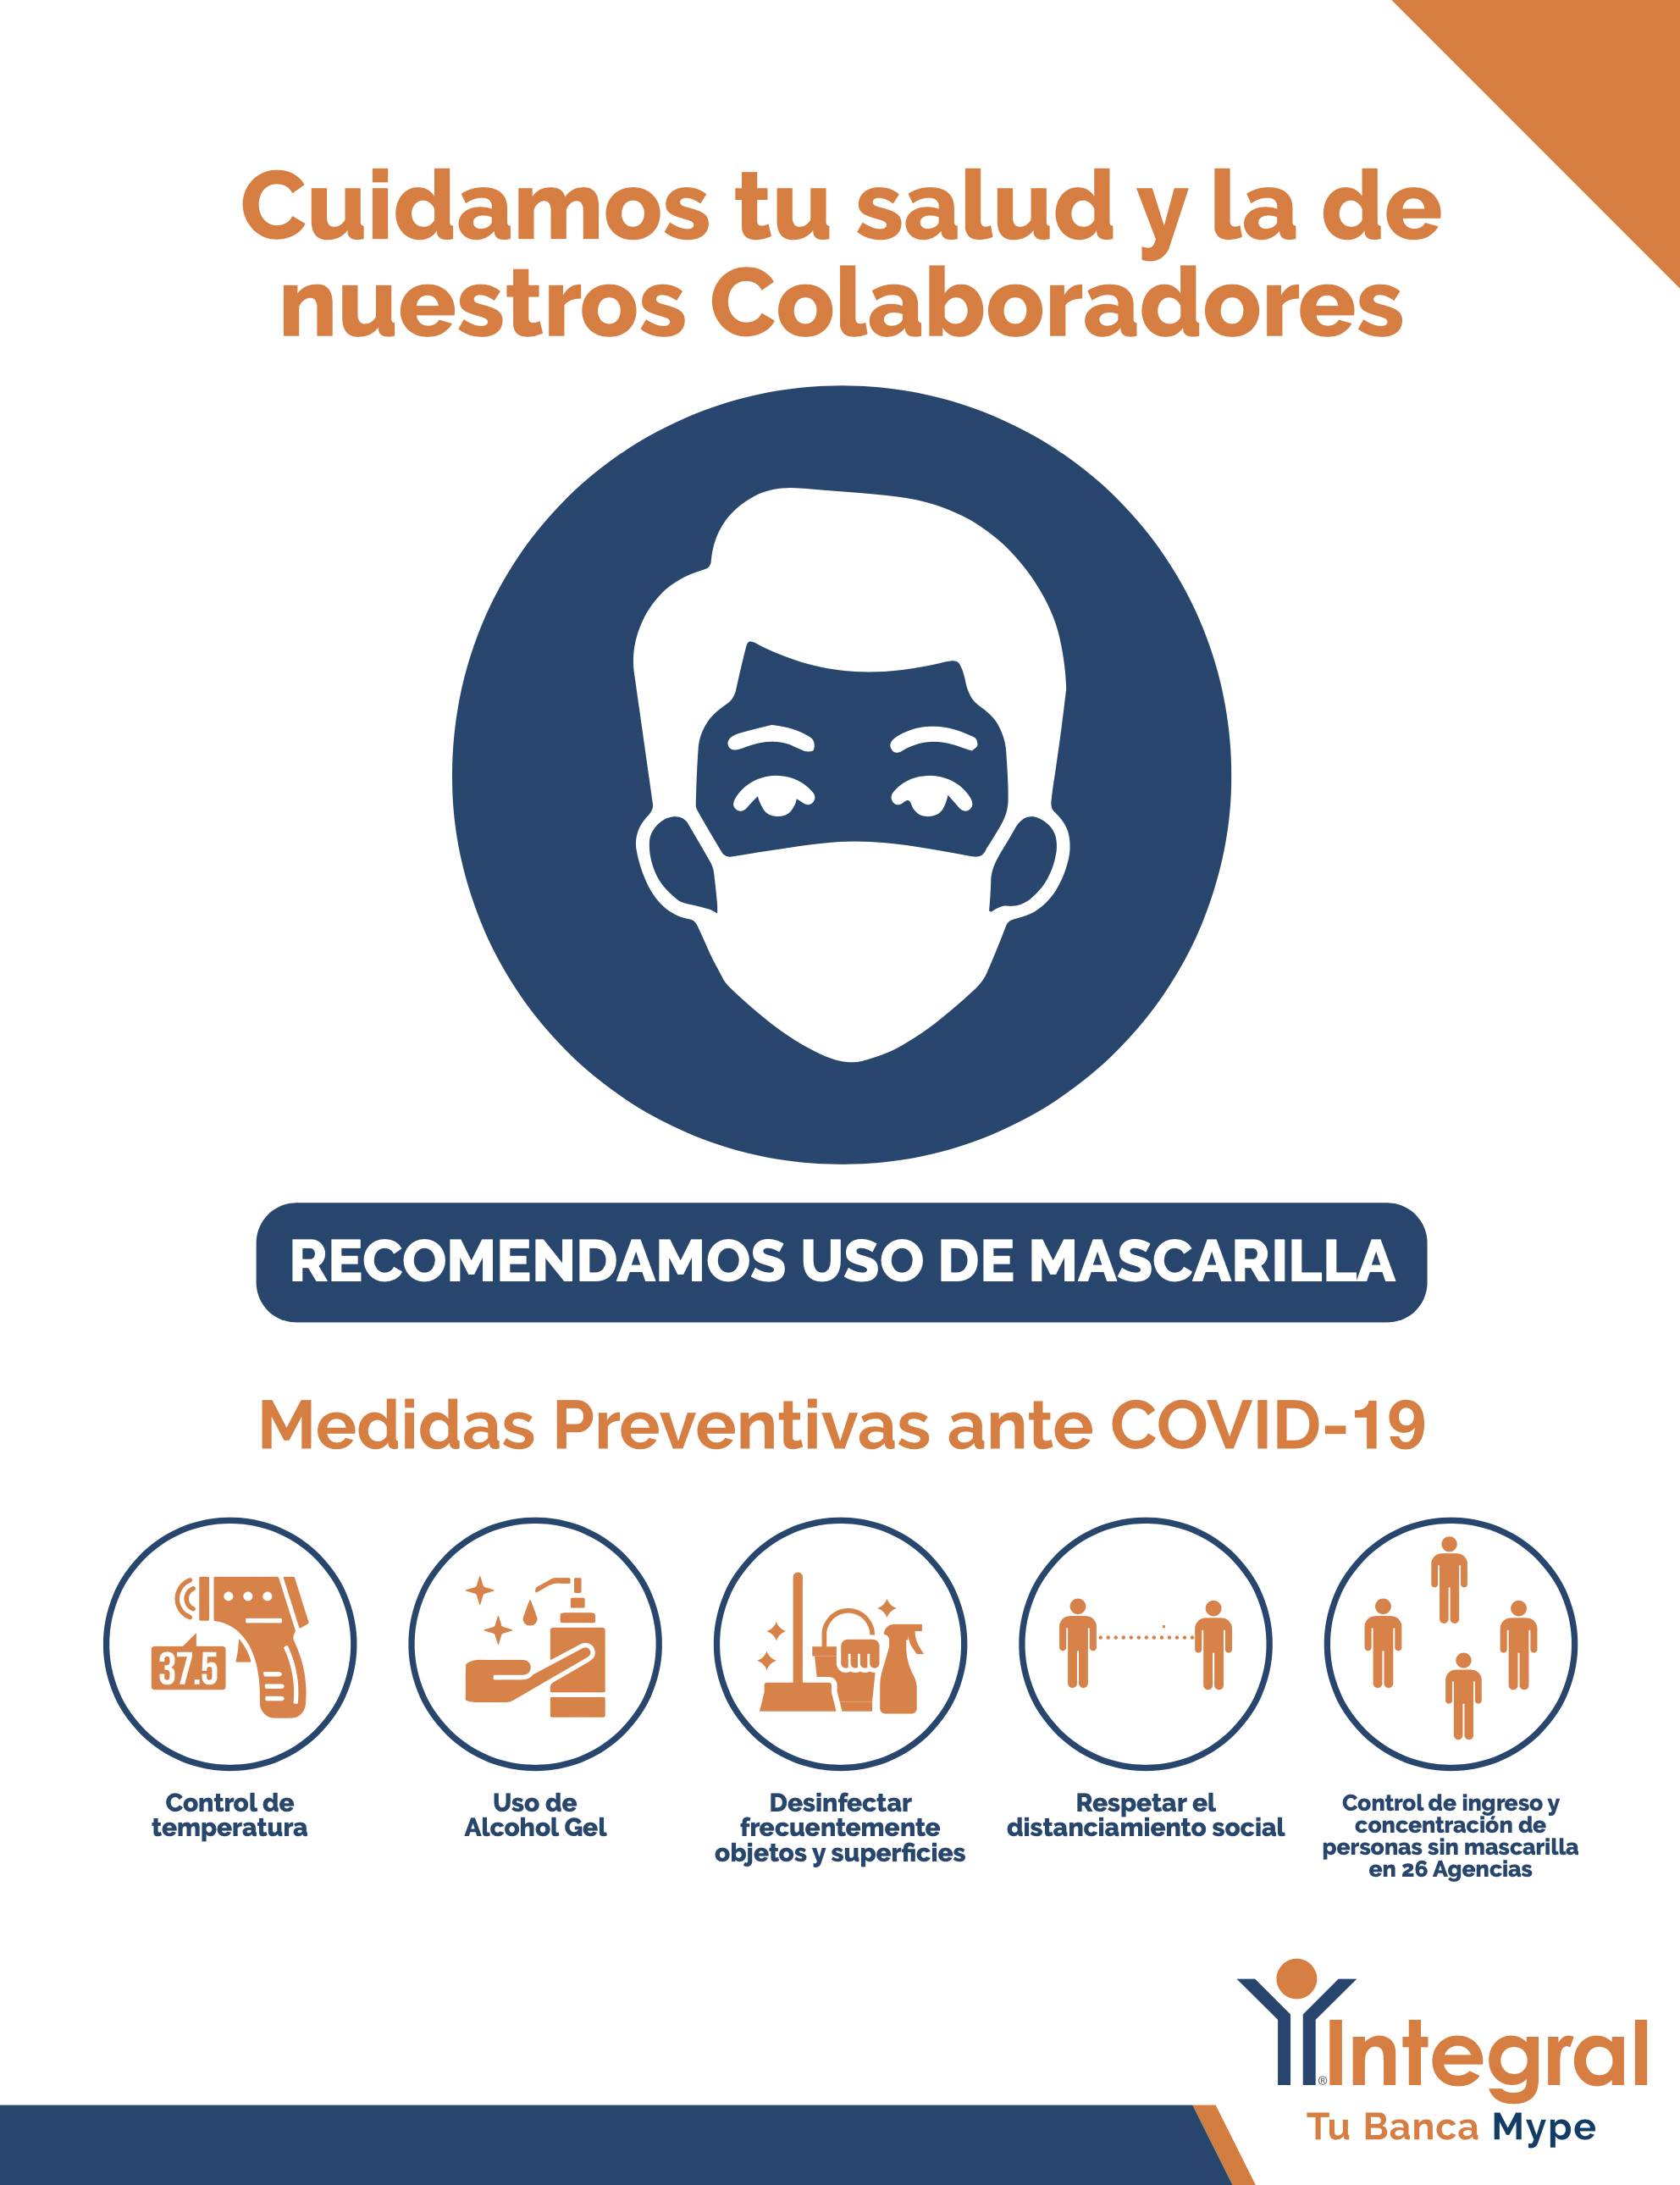 Medidas_Preventivas_-_Recomendamos_uso_de_mascarilla.jpg